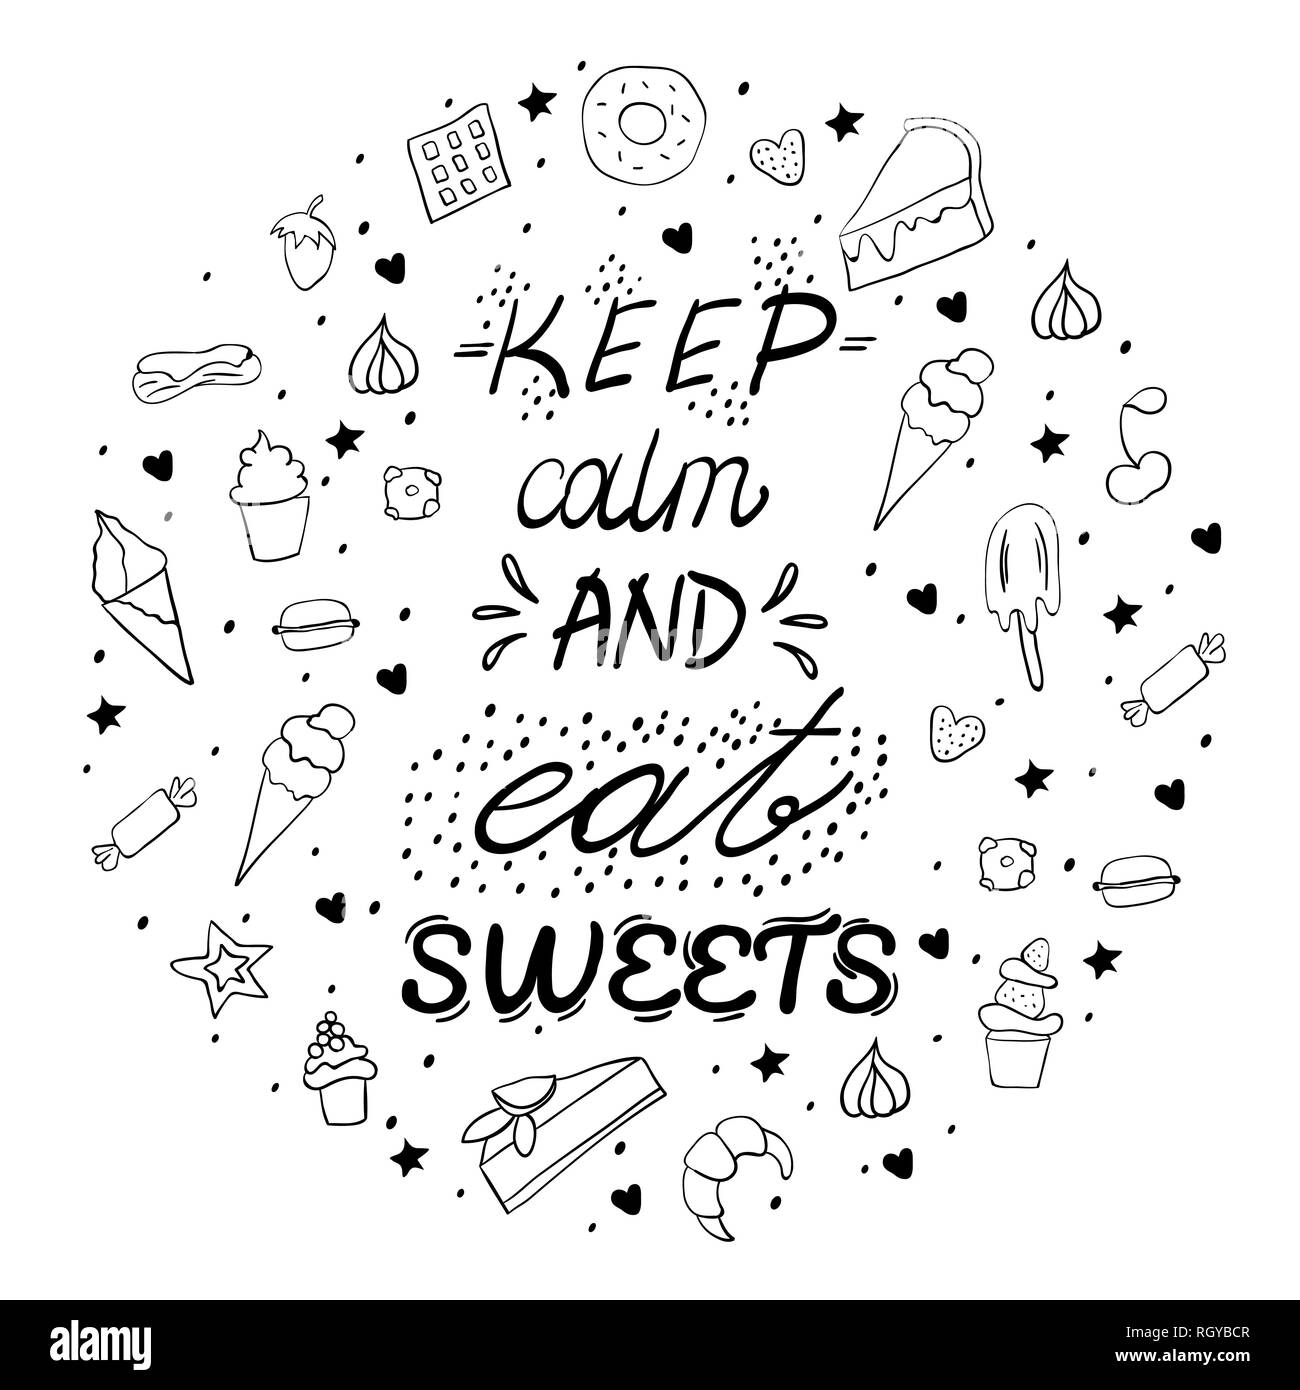 Handgezeichneten Schriftzug Plakat mit Desserts und Süßspeisen. Ruhe und essen Süßigkeiten halten. Vector Illustration. Vektor Konzept für Dessert Menü des Restaurants Stock Vektor